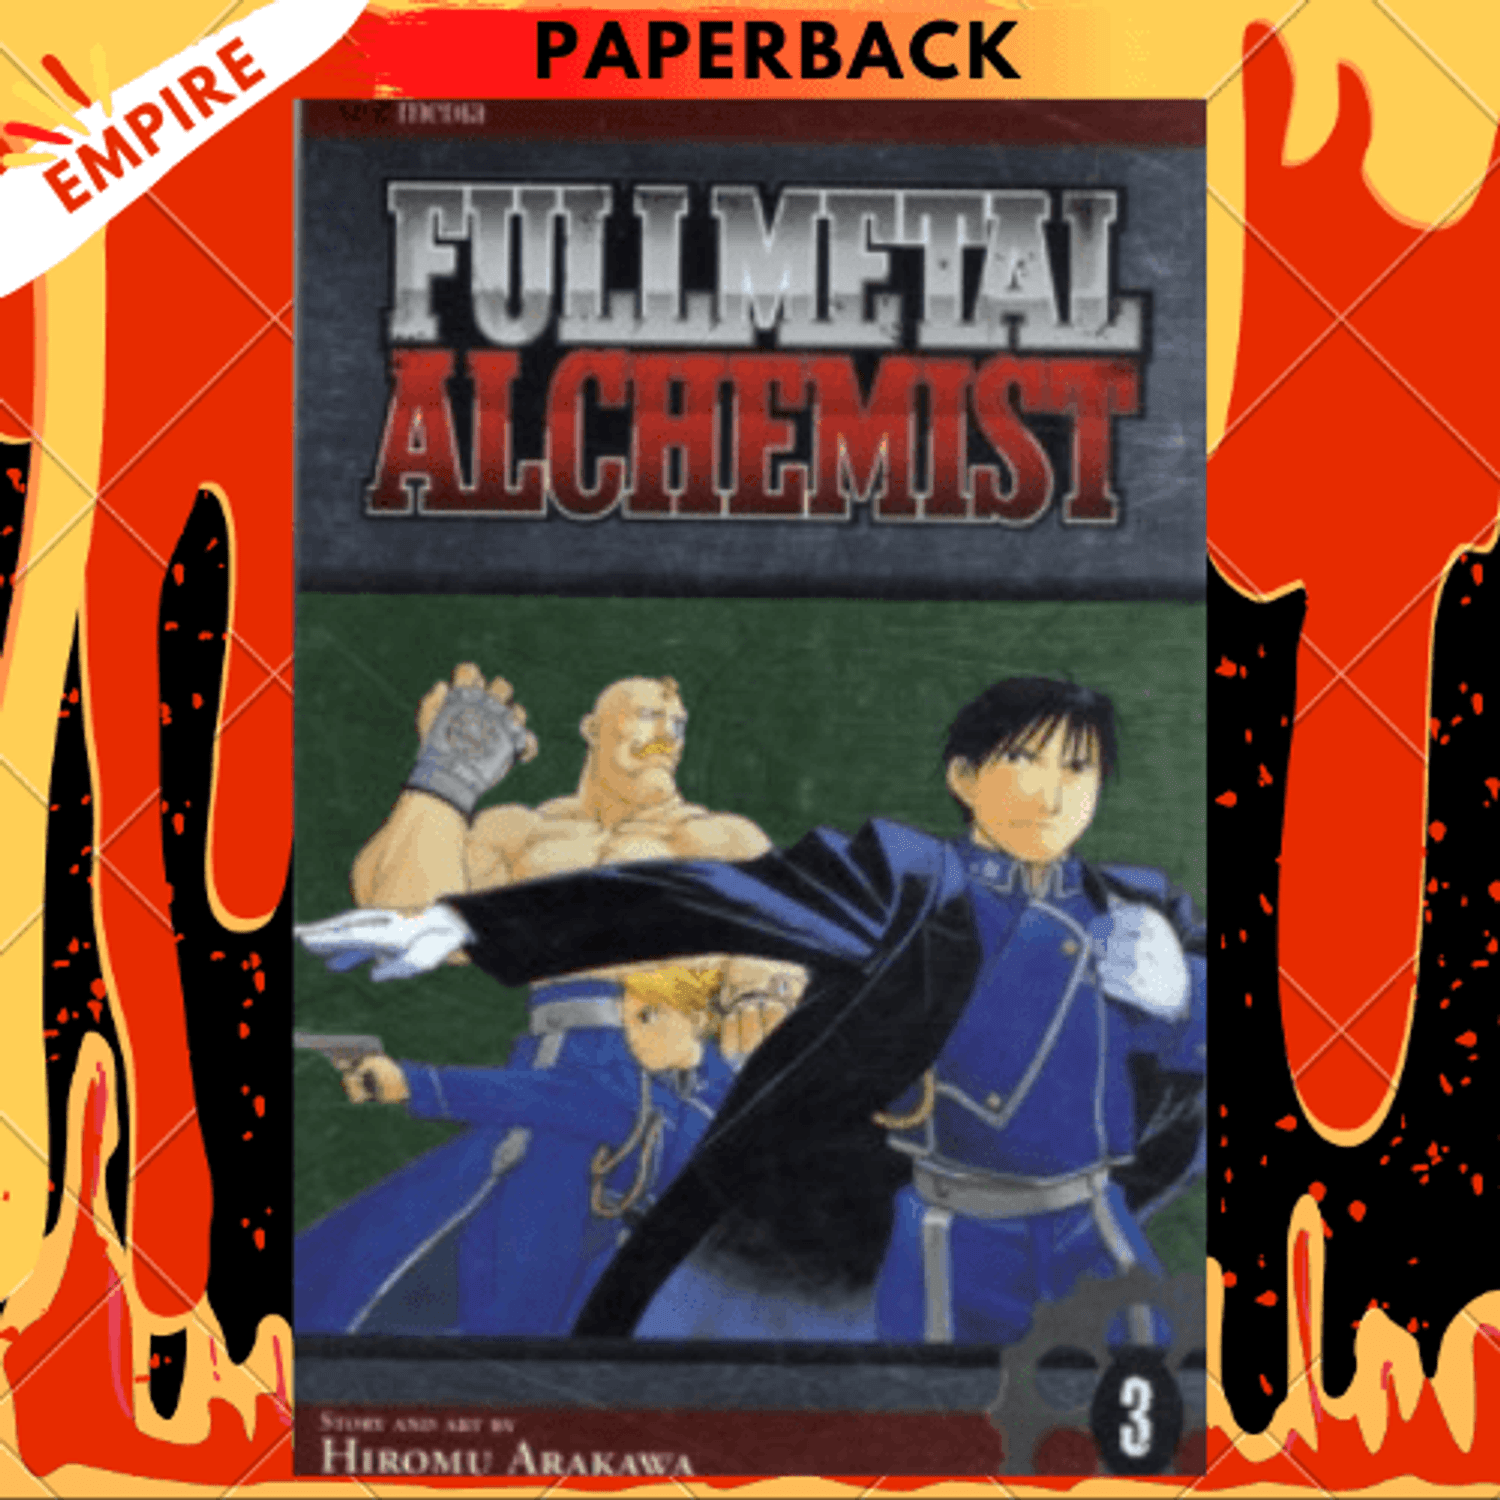 Fullmetal Alchemist (3-in-1 Edition), Vol. 1: Includes vols. 1, 2 & 3 by  Hiromu Arakawa, Paperback